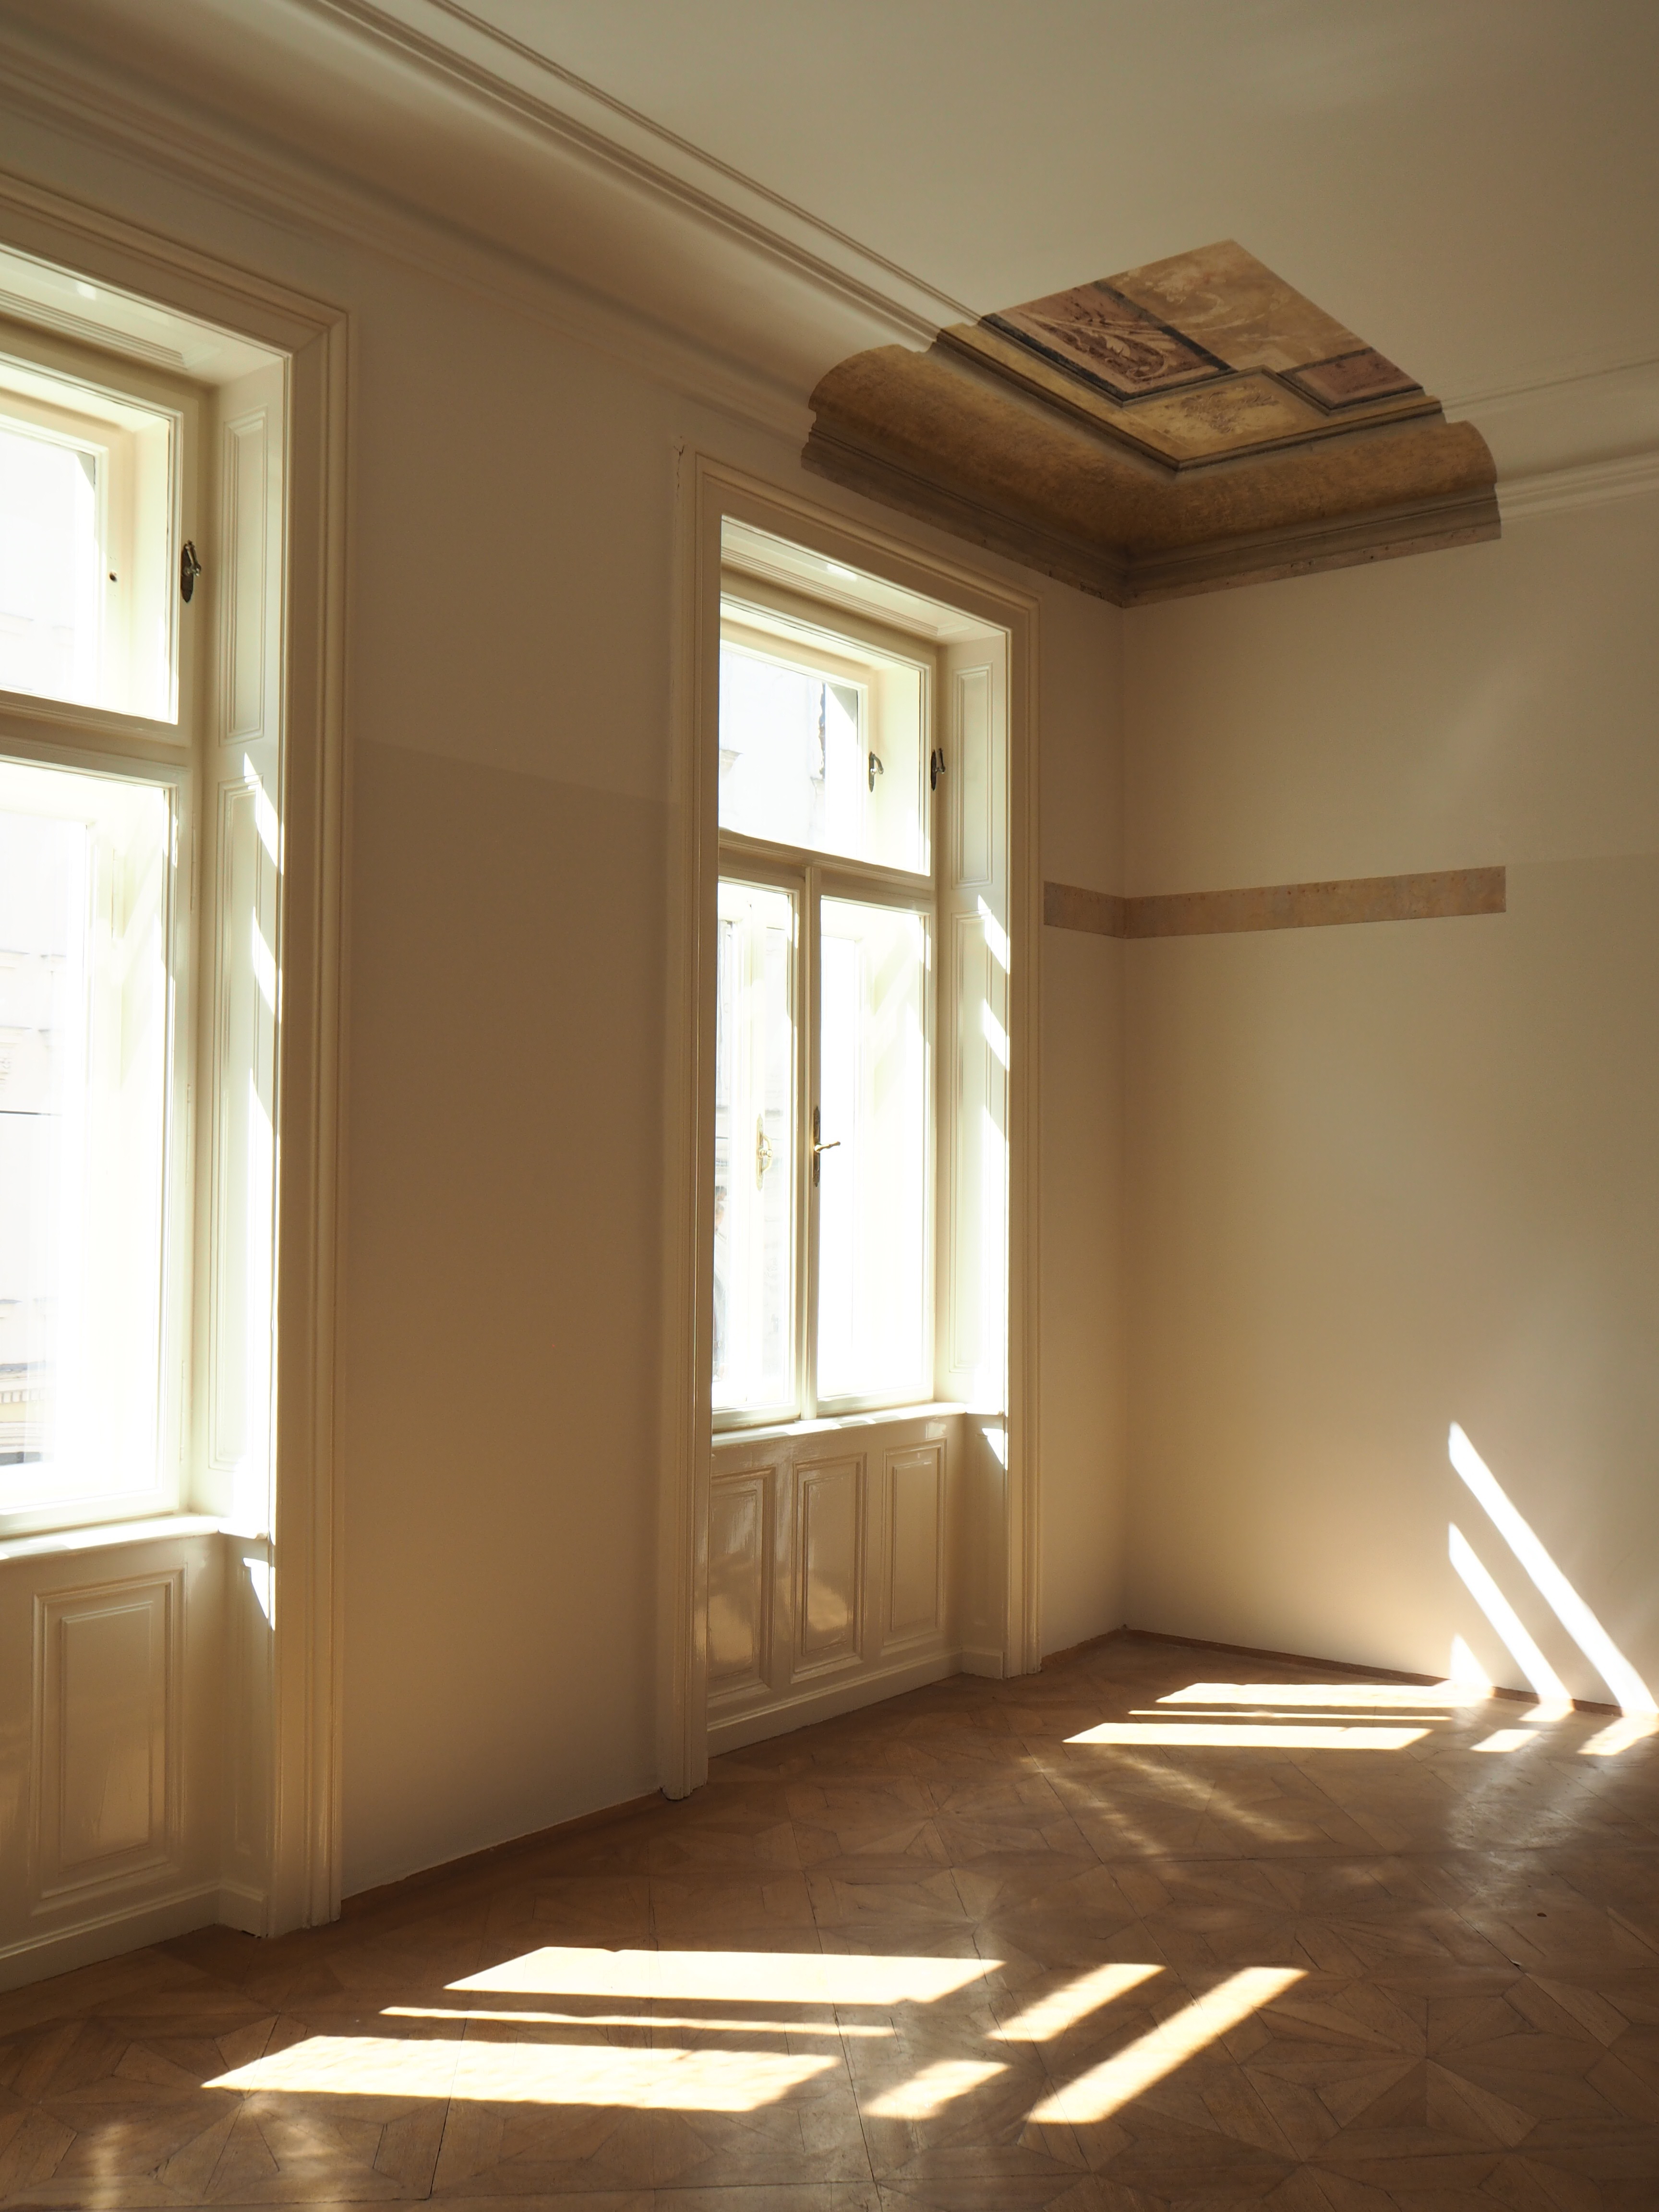 Részletfelvétel Anna Freud szobájában feltárt mennyezeti freskóval 